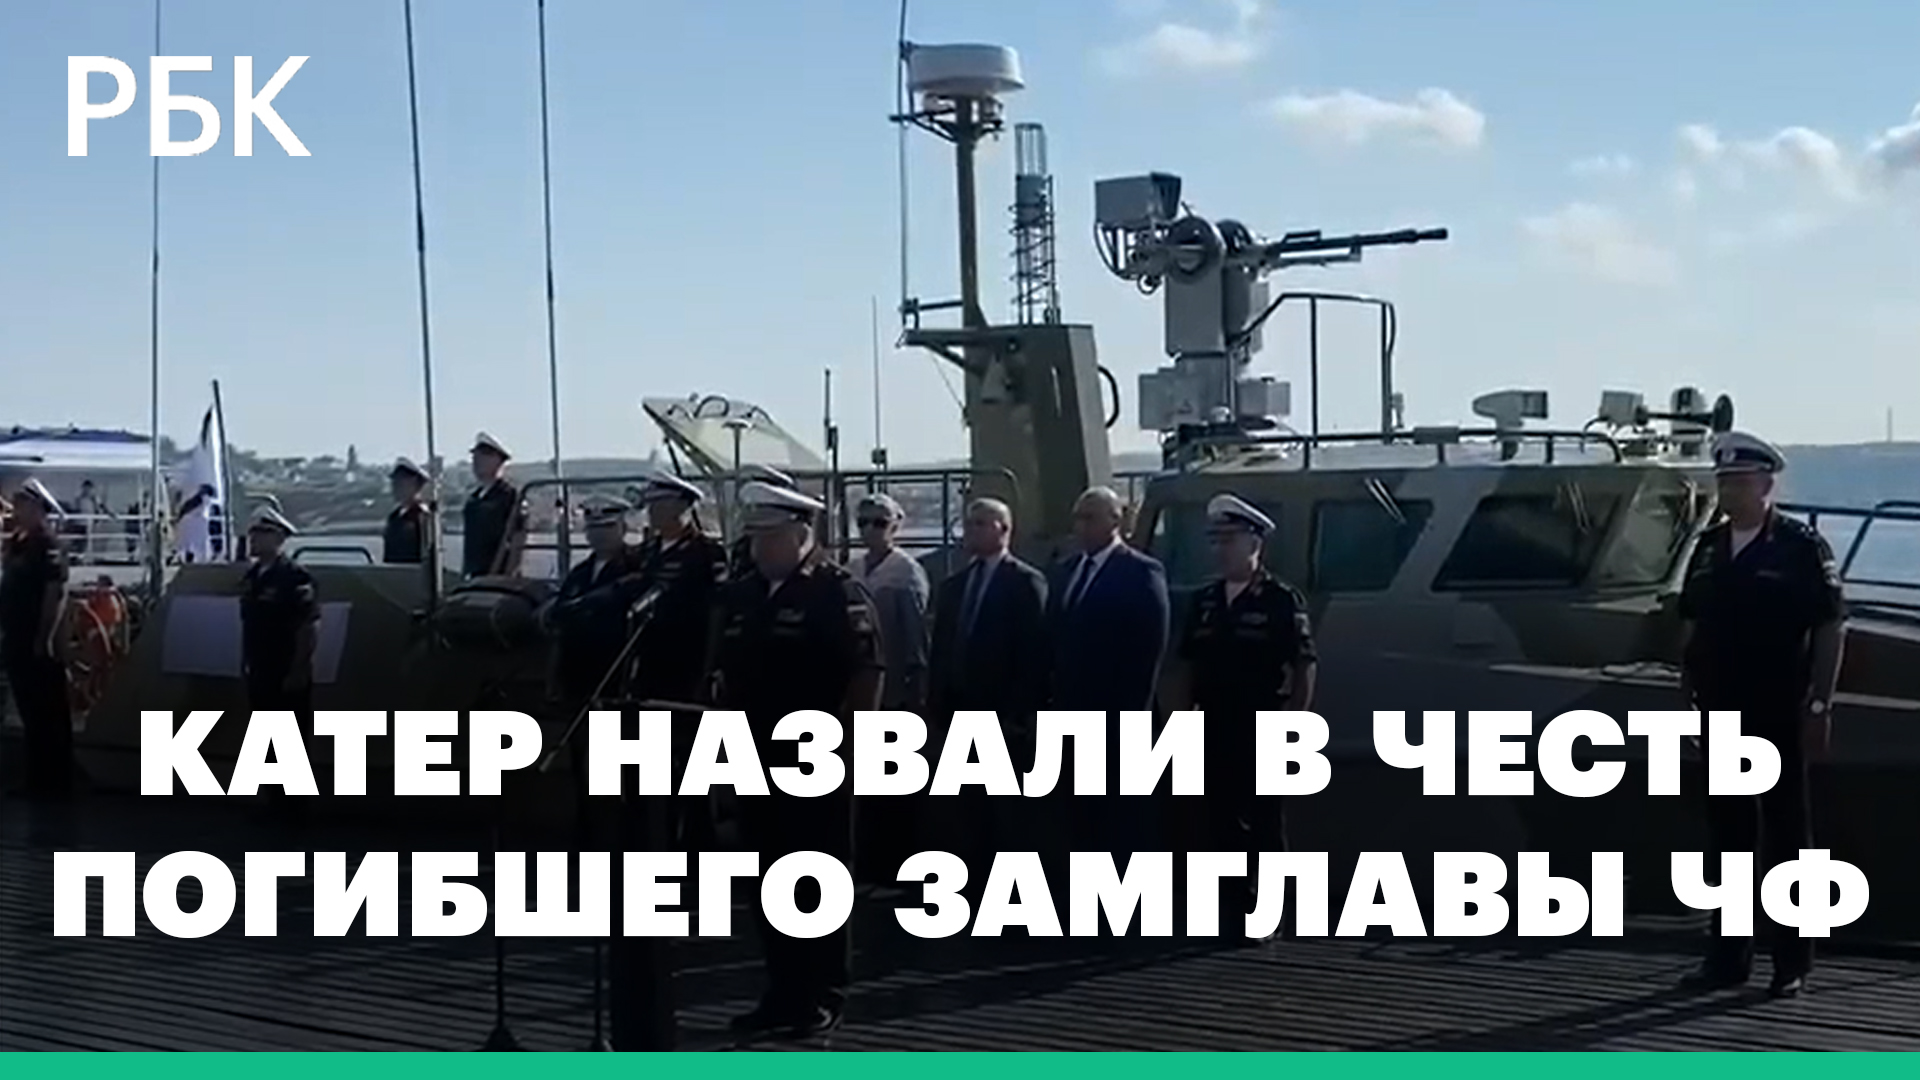 В честь погибшего при спецоперации на Украине замглавы Черноморского флота назвали катер